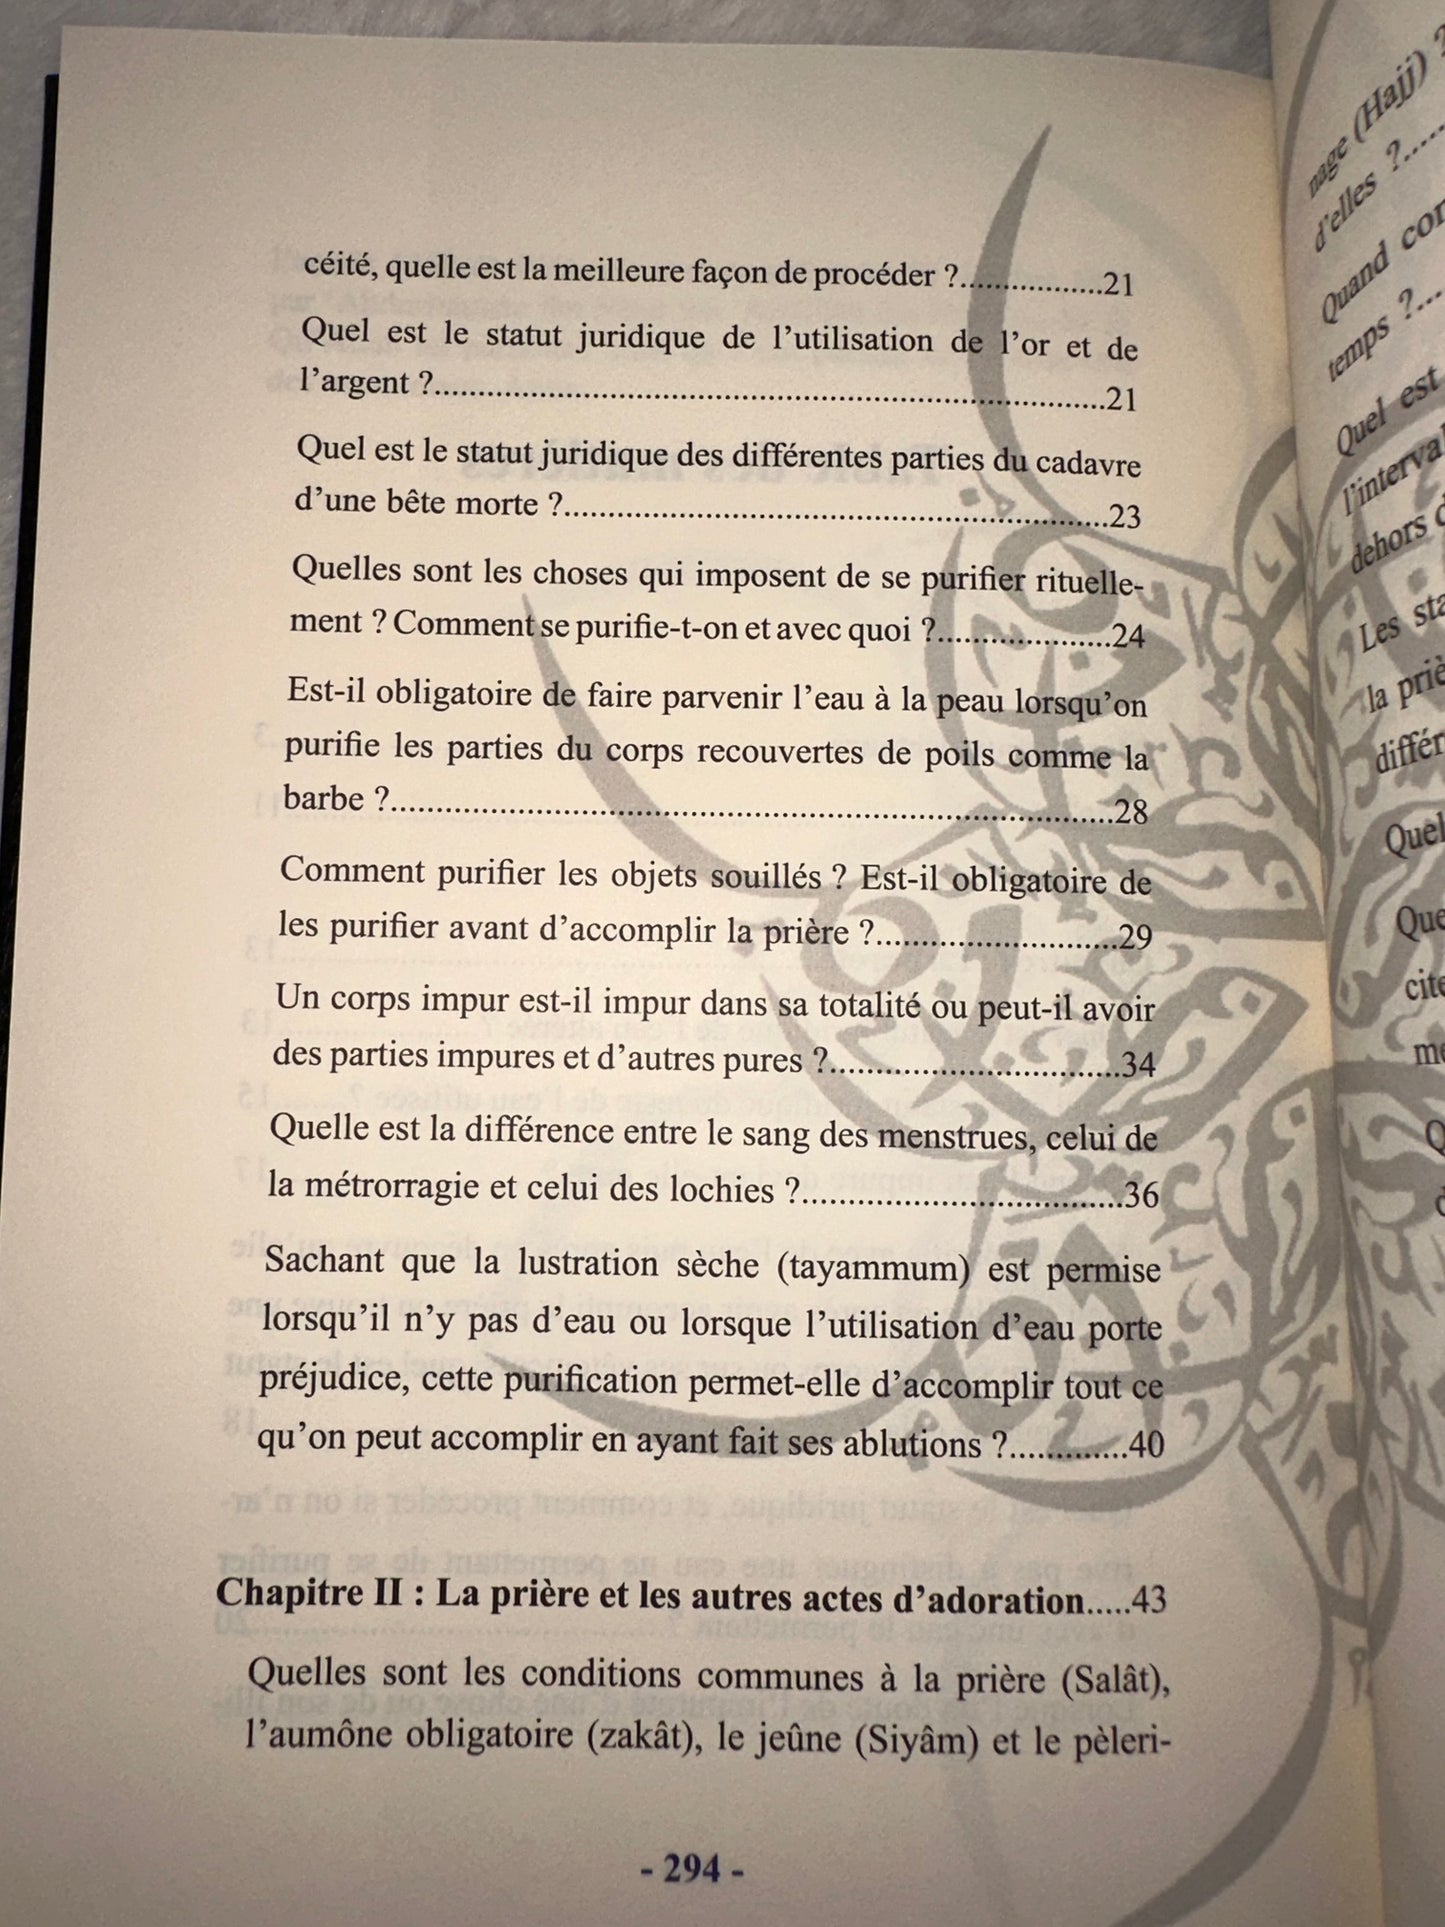 Guide Destiné Aux Clairvoyants Afin De Connaitre Le Fiqh, De Abderrahman Ibn Nâsir As-Sa'di